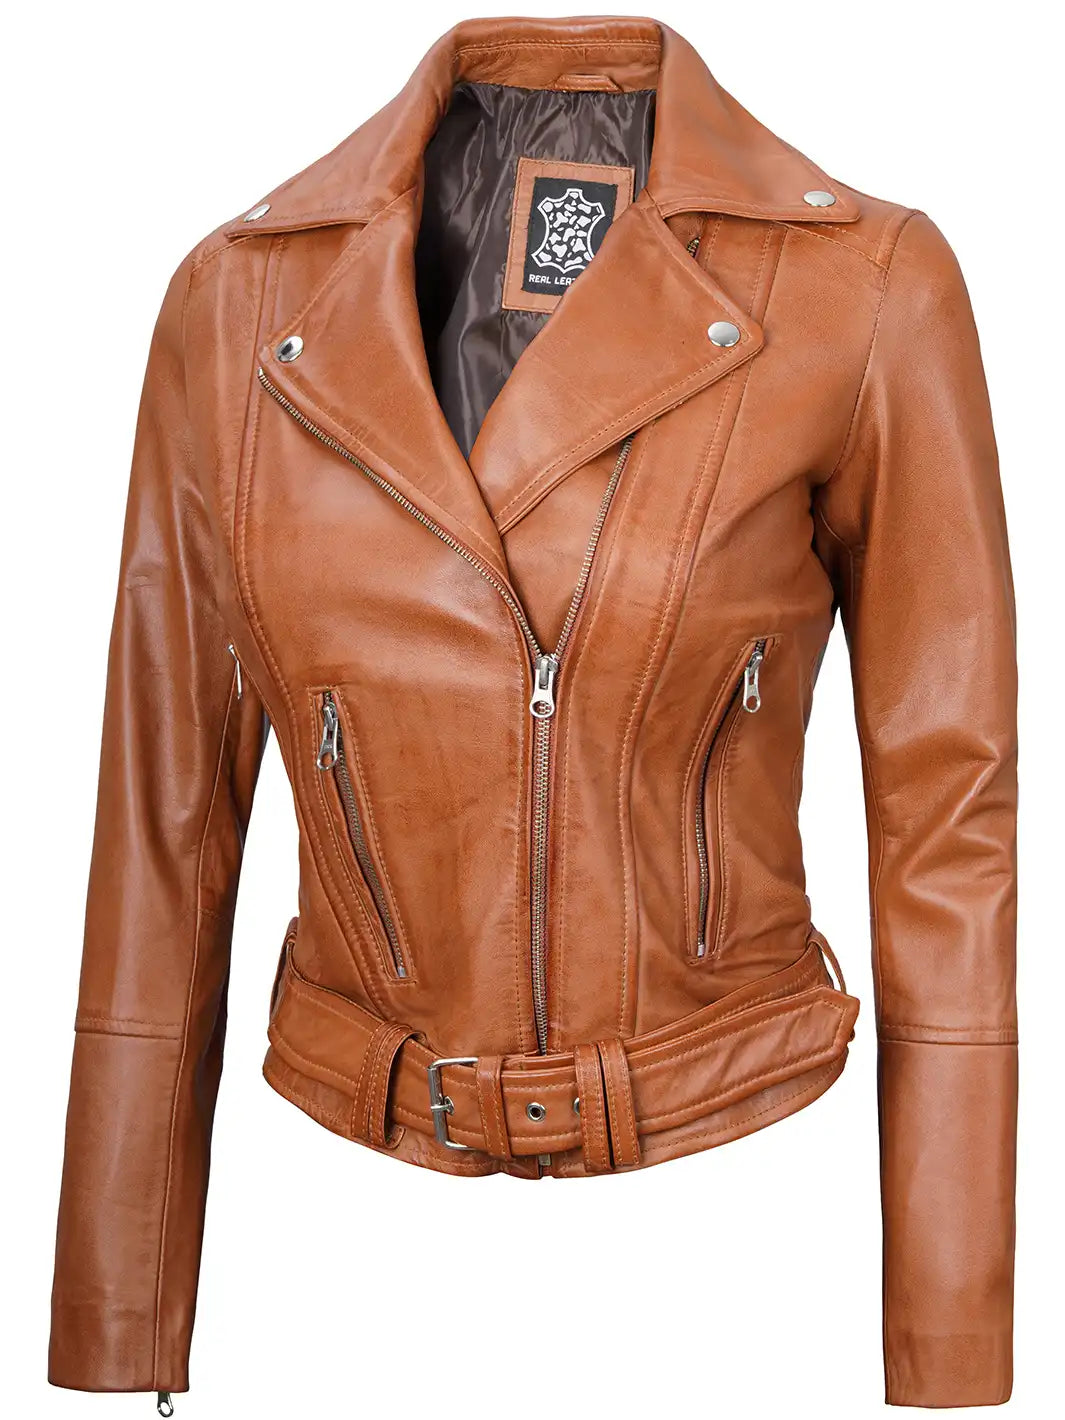 Women tan leather biker jacket